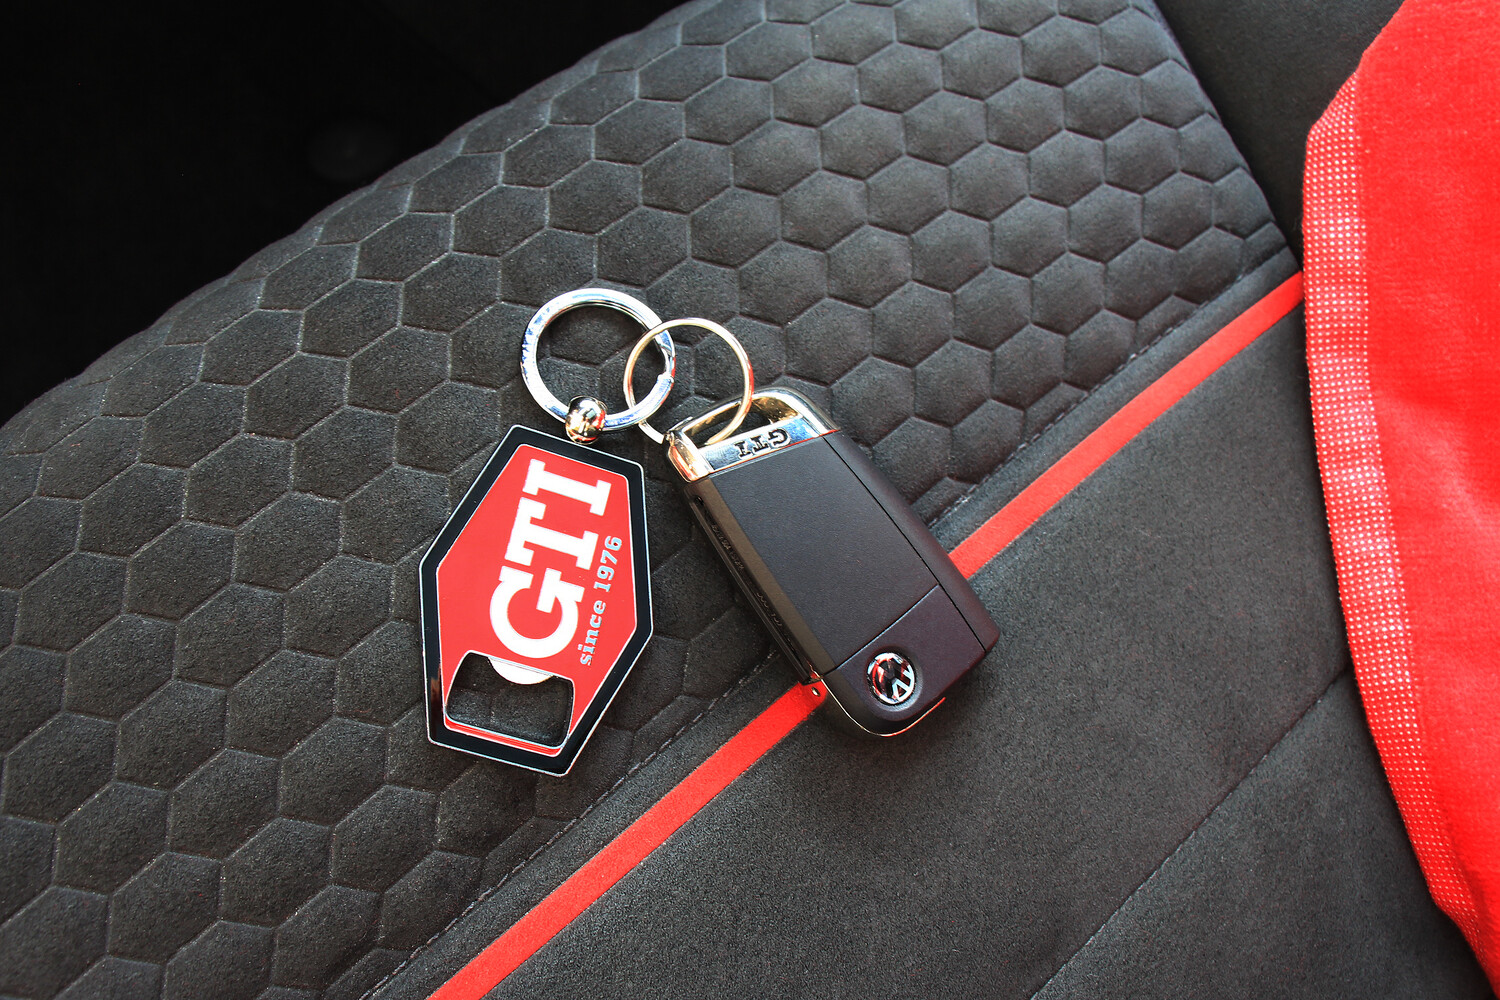 VW GTI Keychain/Bottle Opener
